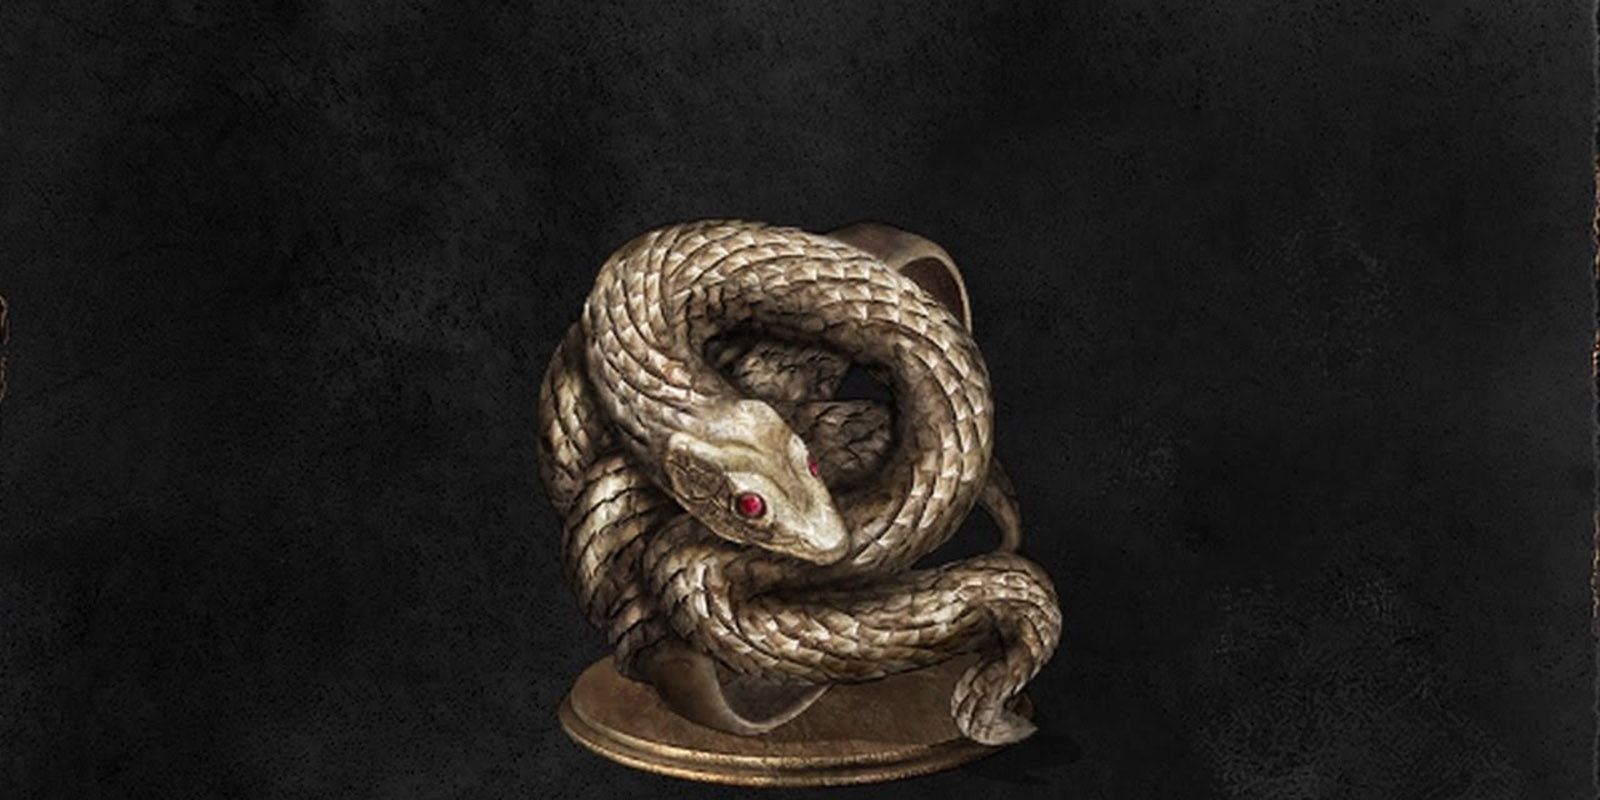 Кольцо золотого змея dark souls. Кольцо с золотым змеем Dark Souls. Кольцо с двумя змеями. Серебряное кольцо жадного змея Dark Souls 3 стена.